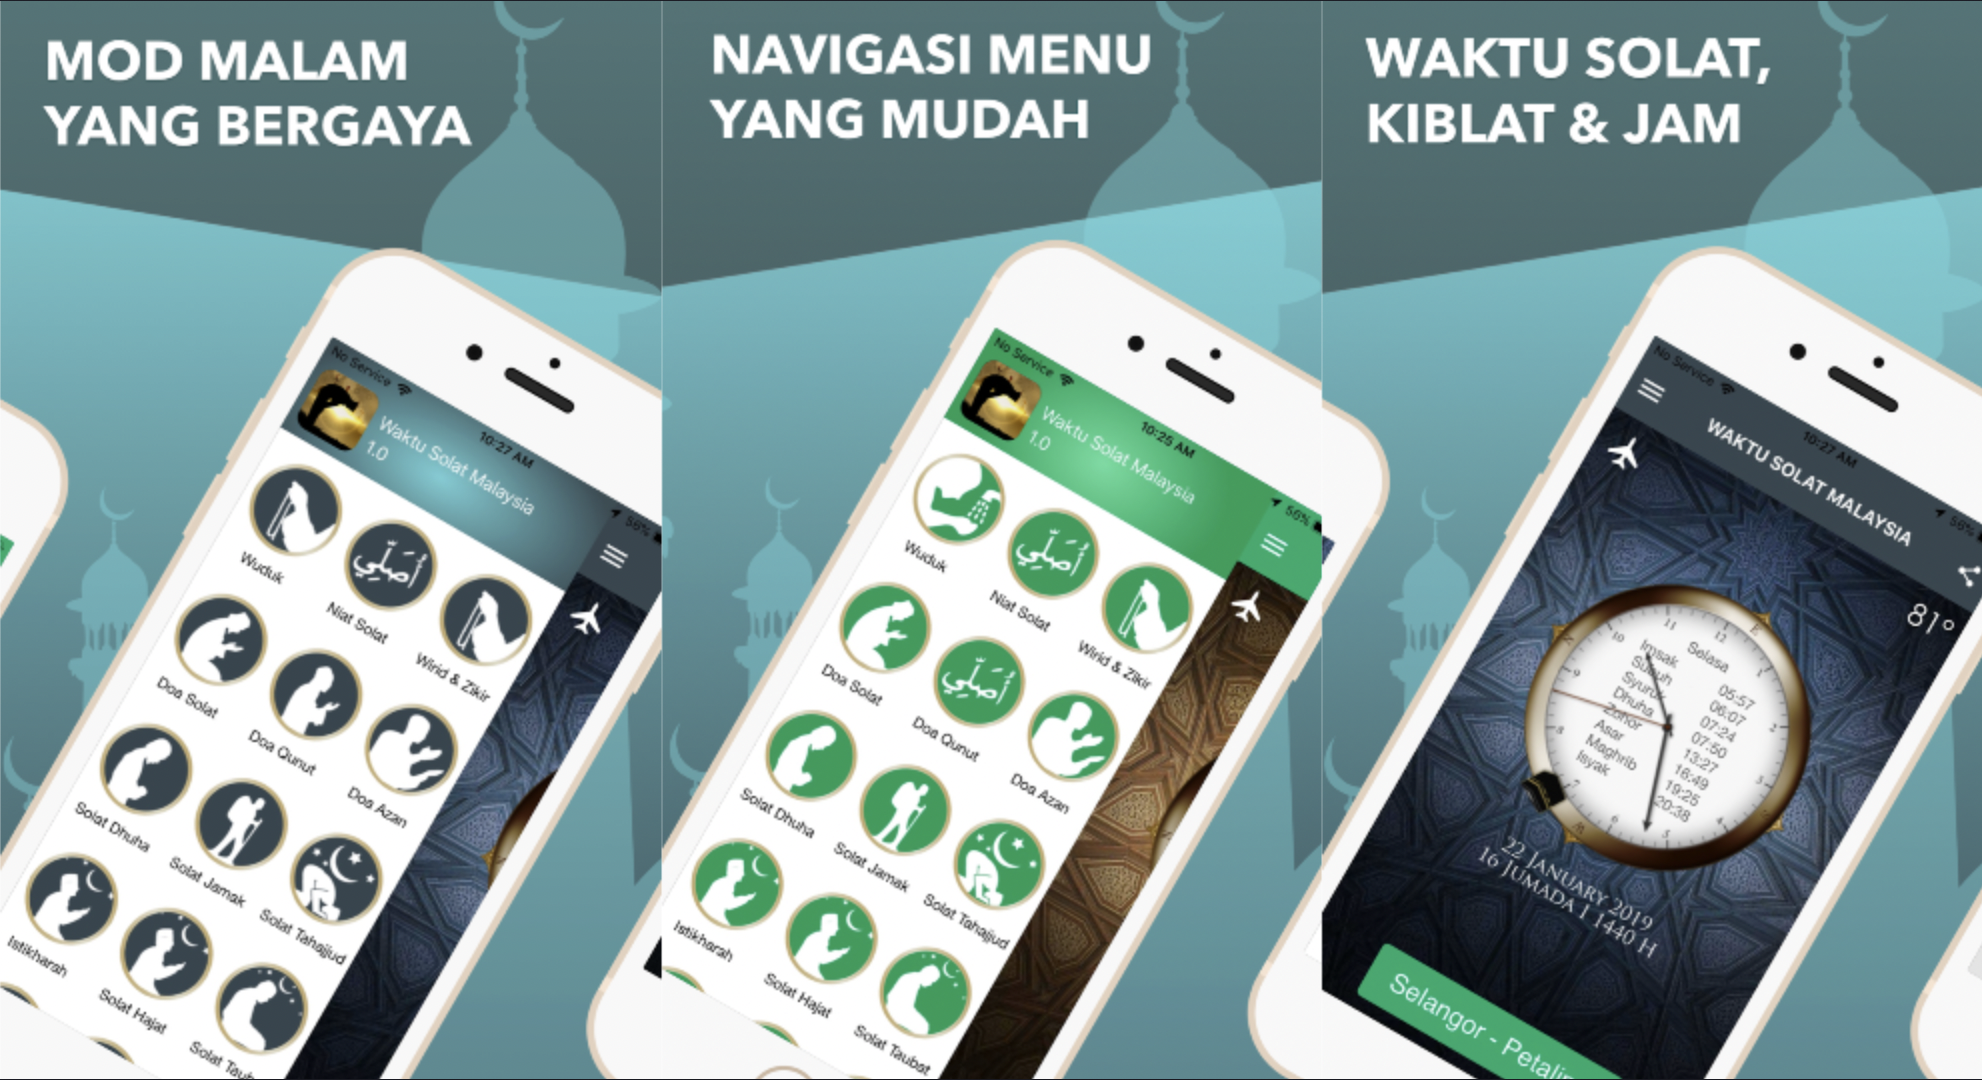 Lengkap Dengan Pelbagai Fungsi Menarik, Aplikasi Waktu Solat Malaysia Jadi Pilihan